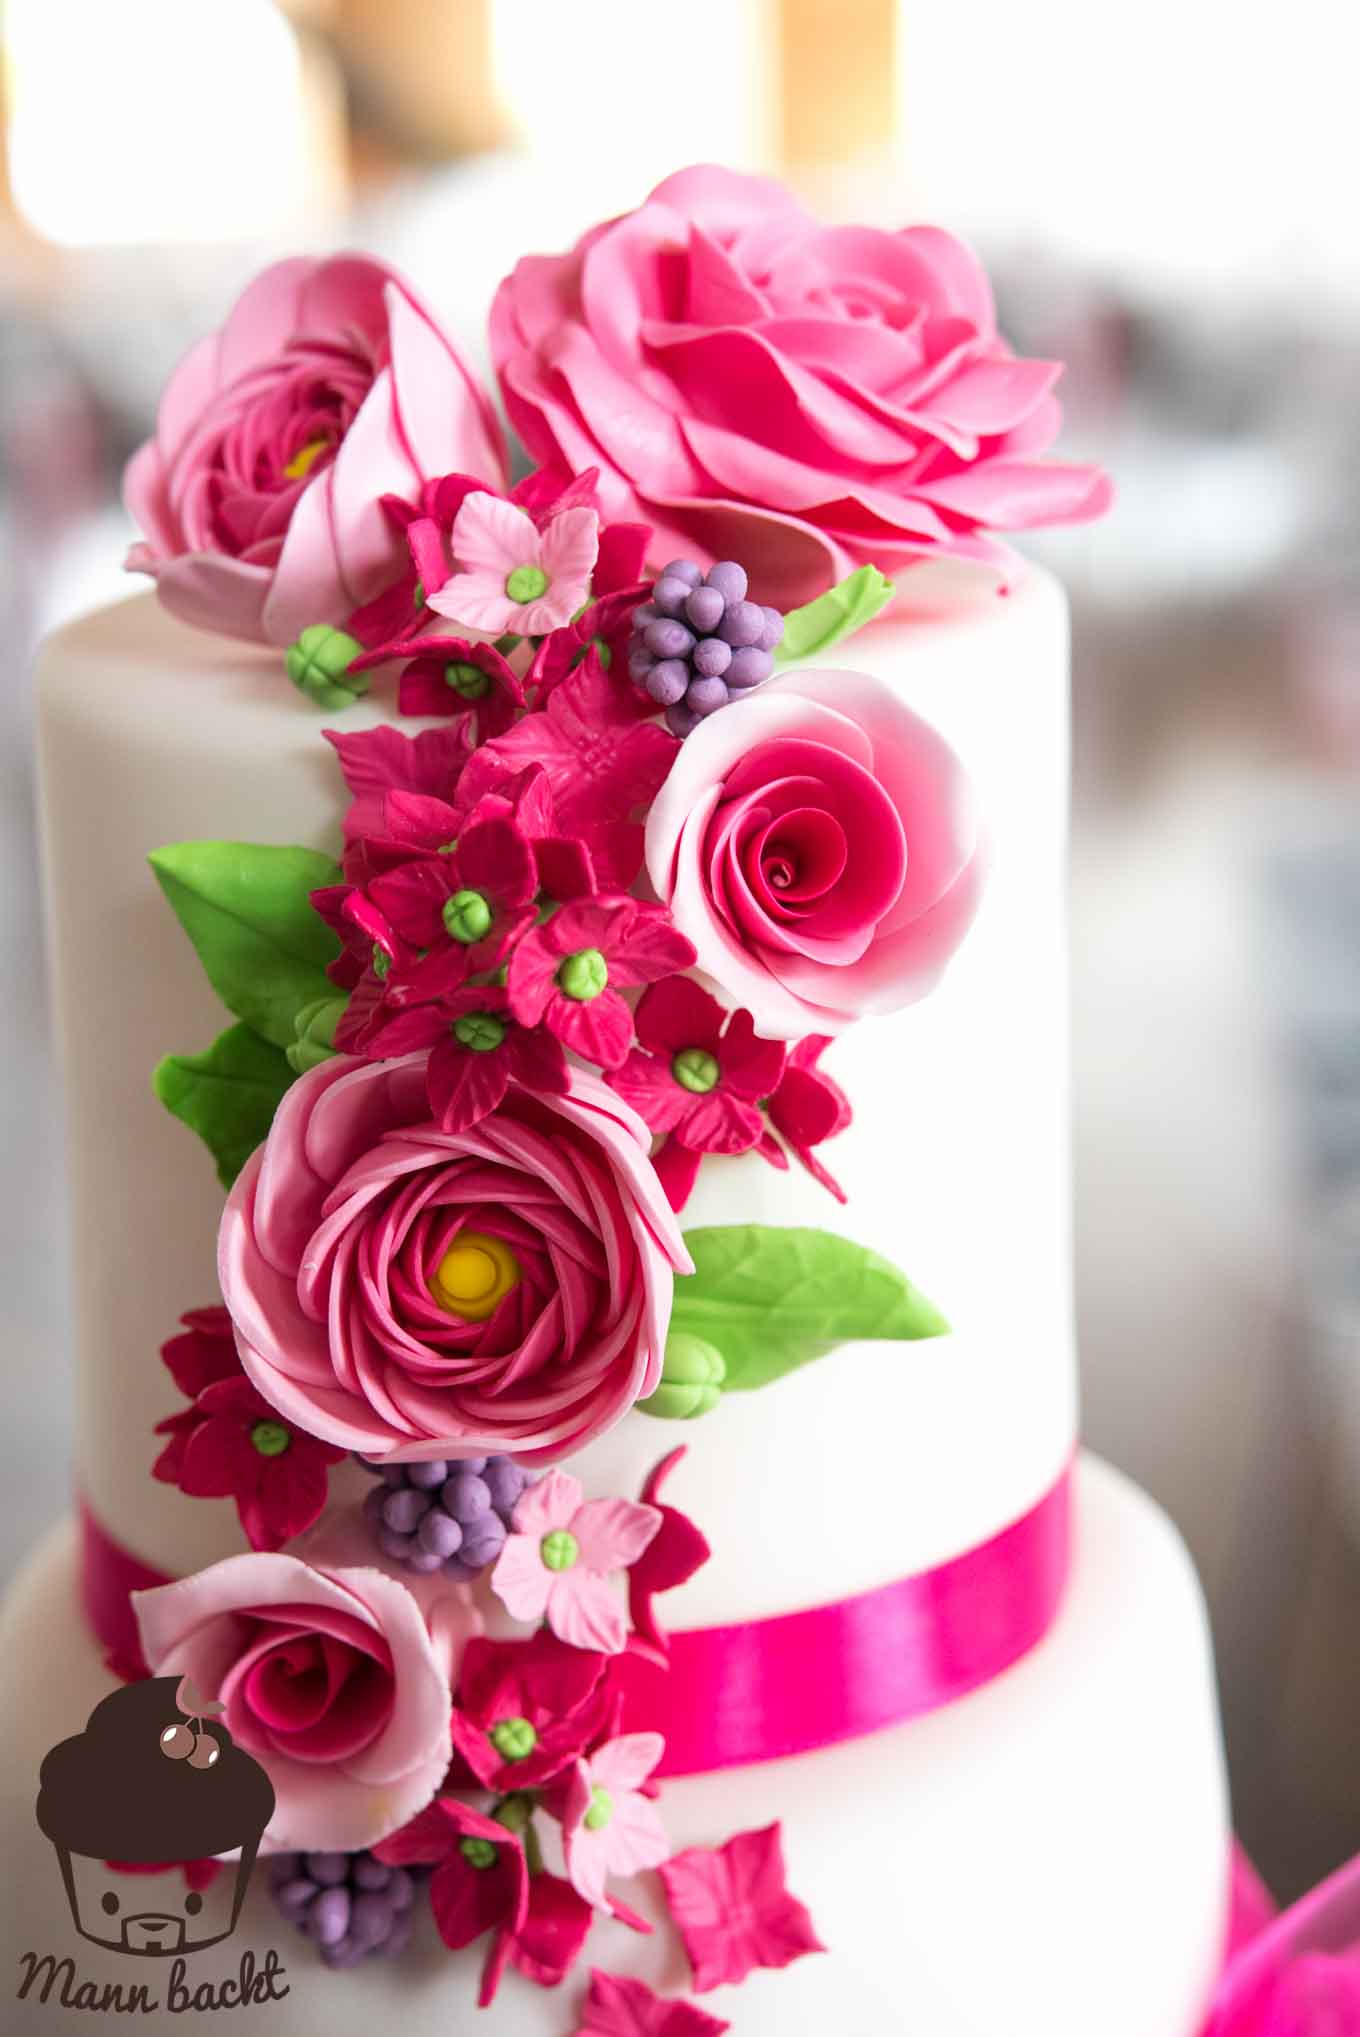 Hochzeitstorte Mann backt Tortendesign pink Wedding Cake Moschen (3 von 9)